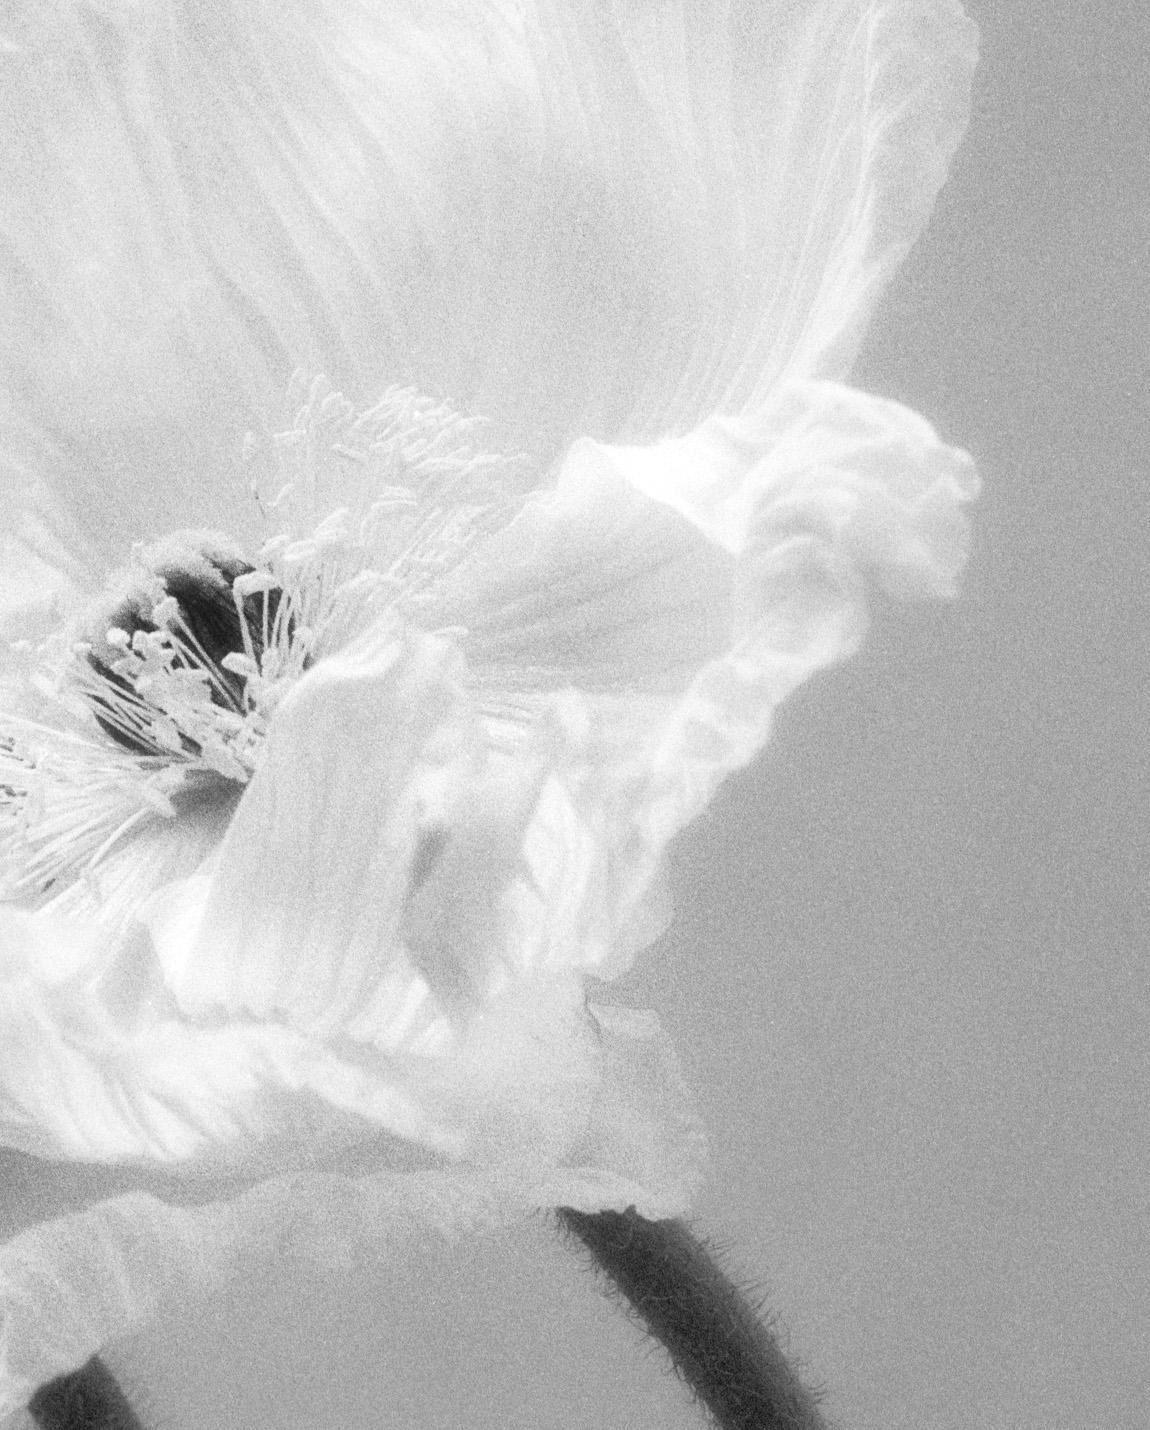 Coupled Poppies – analoge schwarz-weiße Blumenfotografie in Schwarz-Weiß, Ltd. 15 – Photograph von Ugne Pouwell